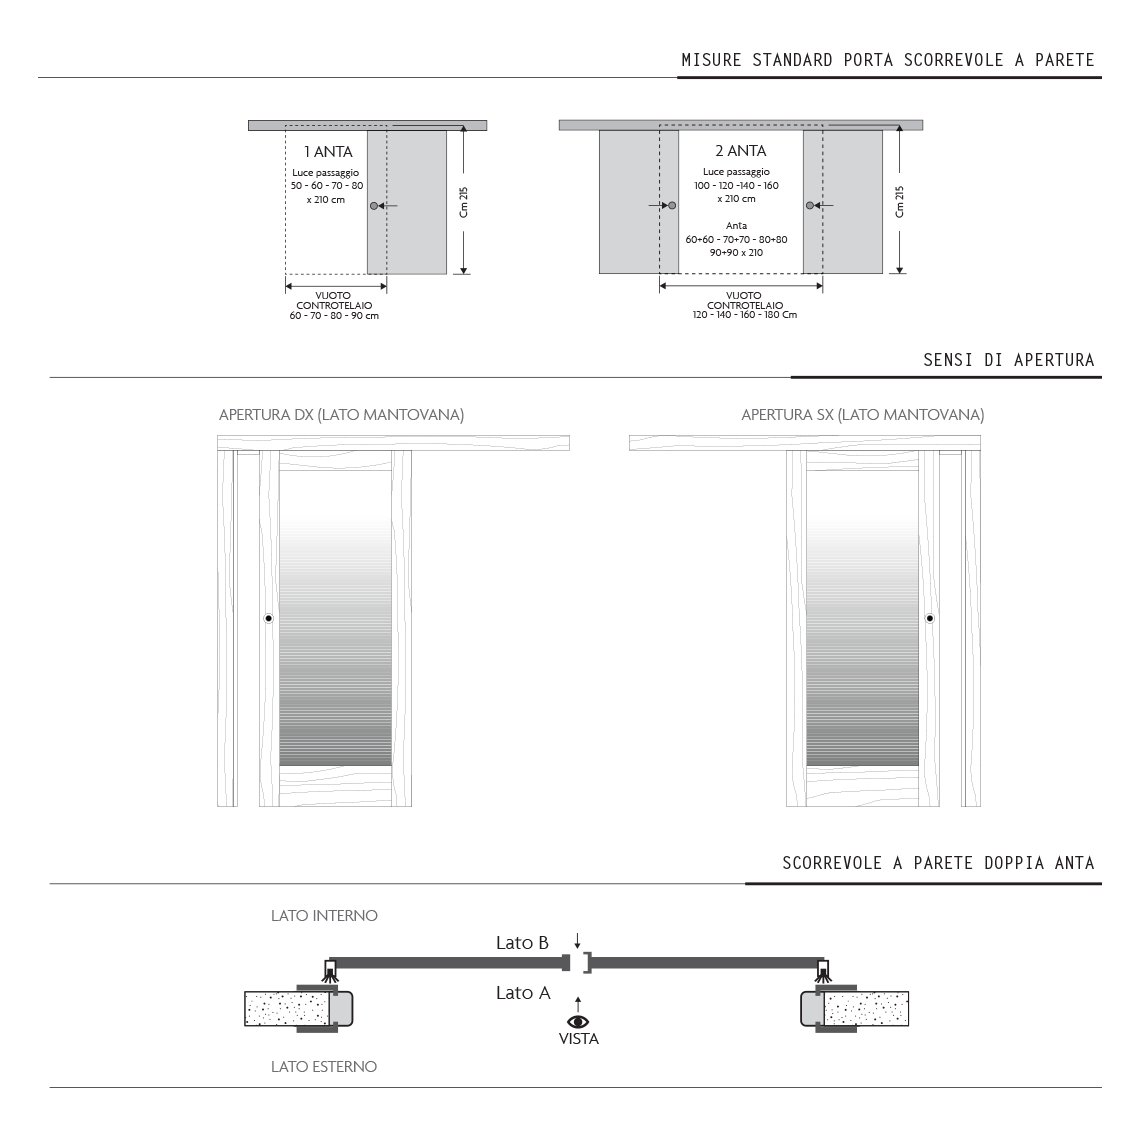 Misure standard porta scorrevole a parete • Porte interne Condoleo